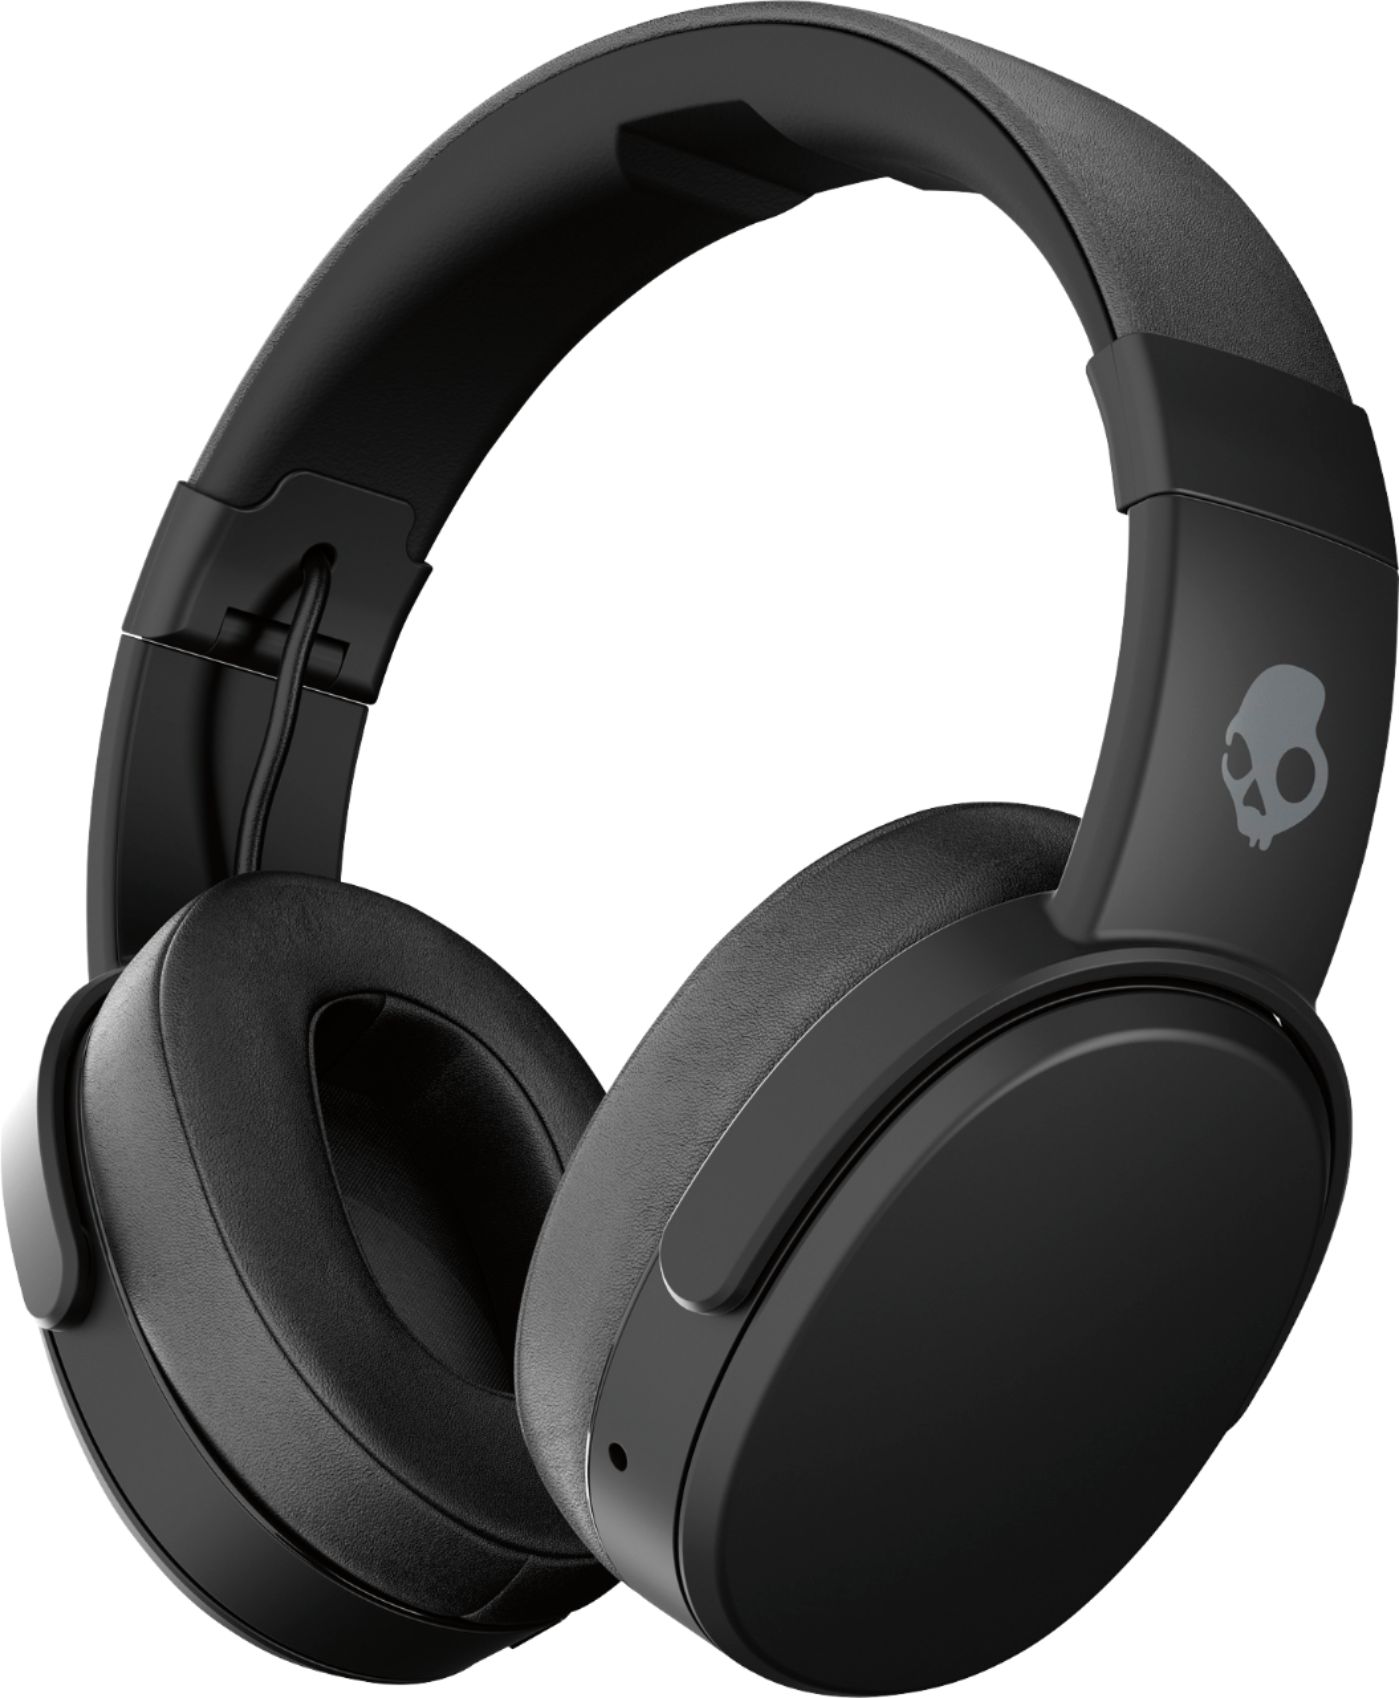 voltereta Mucama salario Skullcandy Crusher Wireless Over-the-Ear Headphones Black/Coral S6CRW-K591  - Best Buy